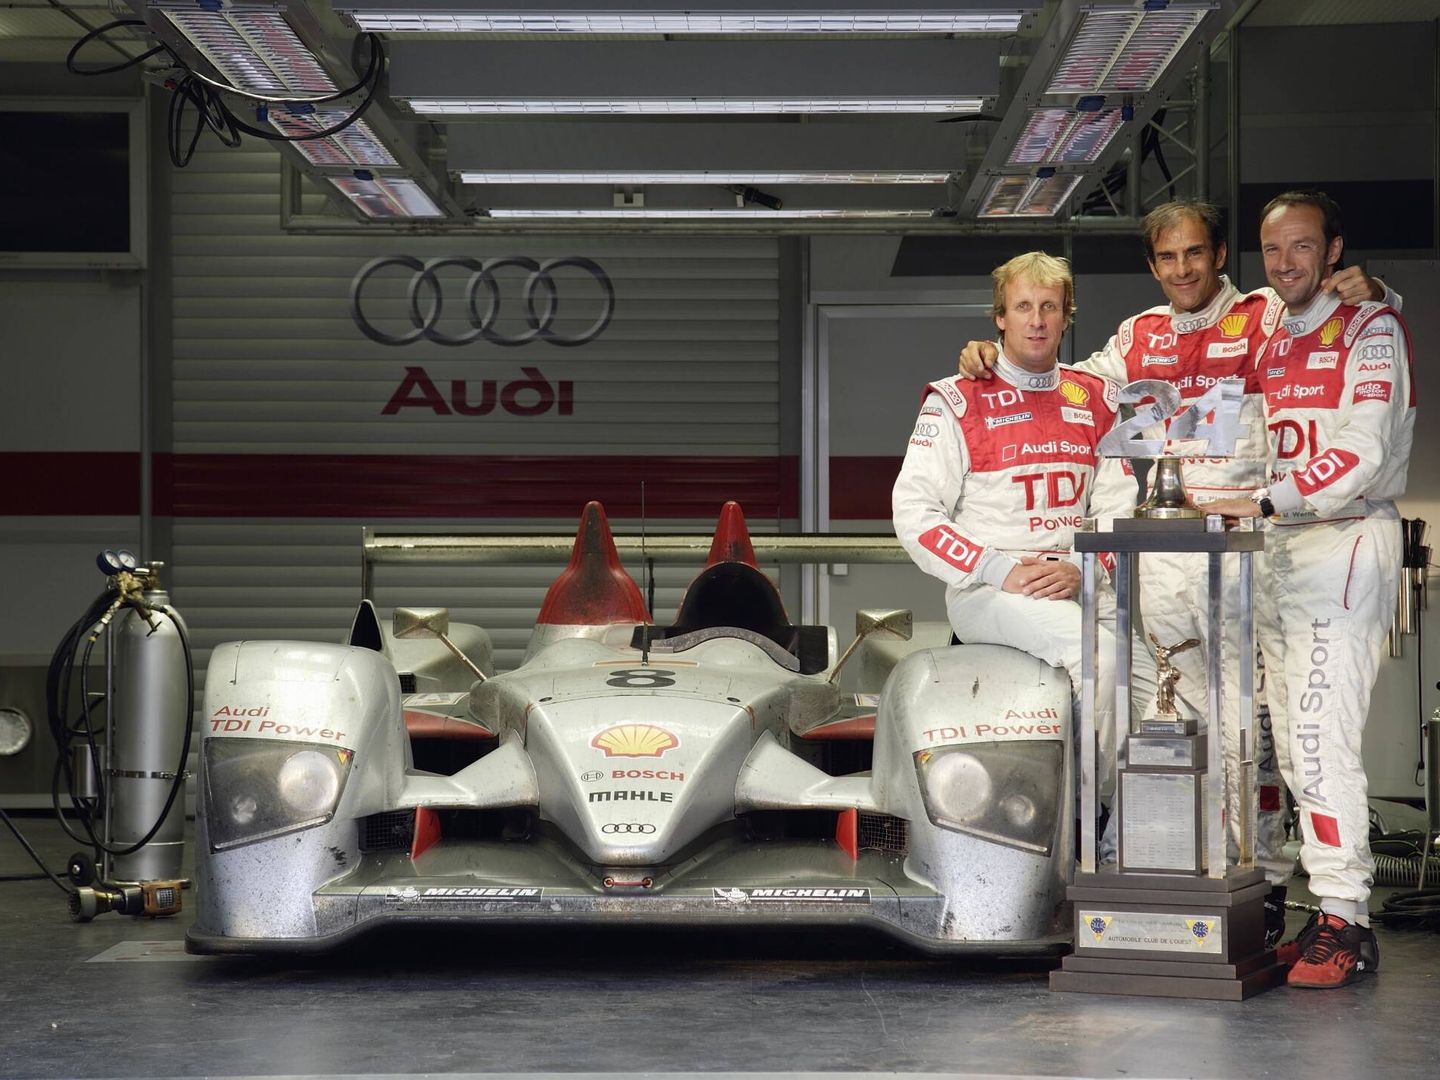 El R10 TDI de motor diésel ganador en Le Mans en 2006, junto a sus tres pilotos: Frank Biela, Emmanuele Pirro y Marco Werner.